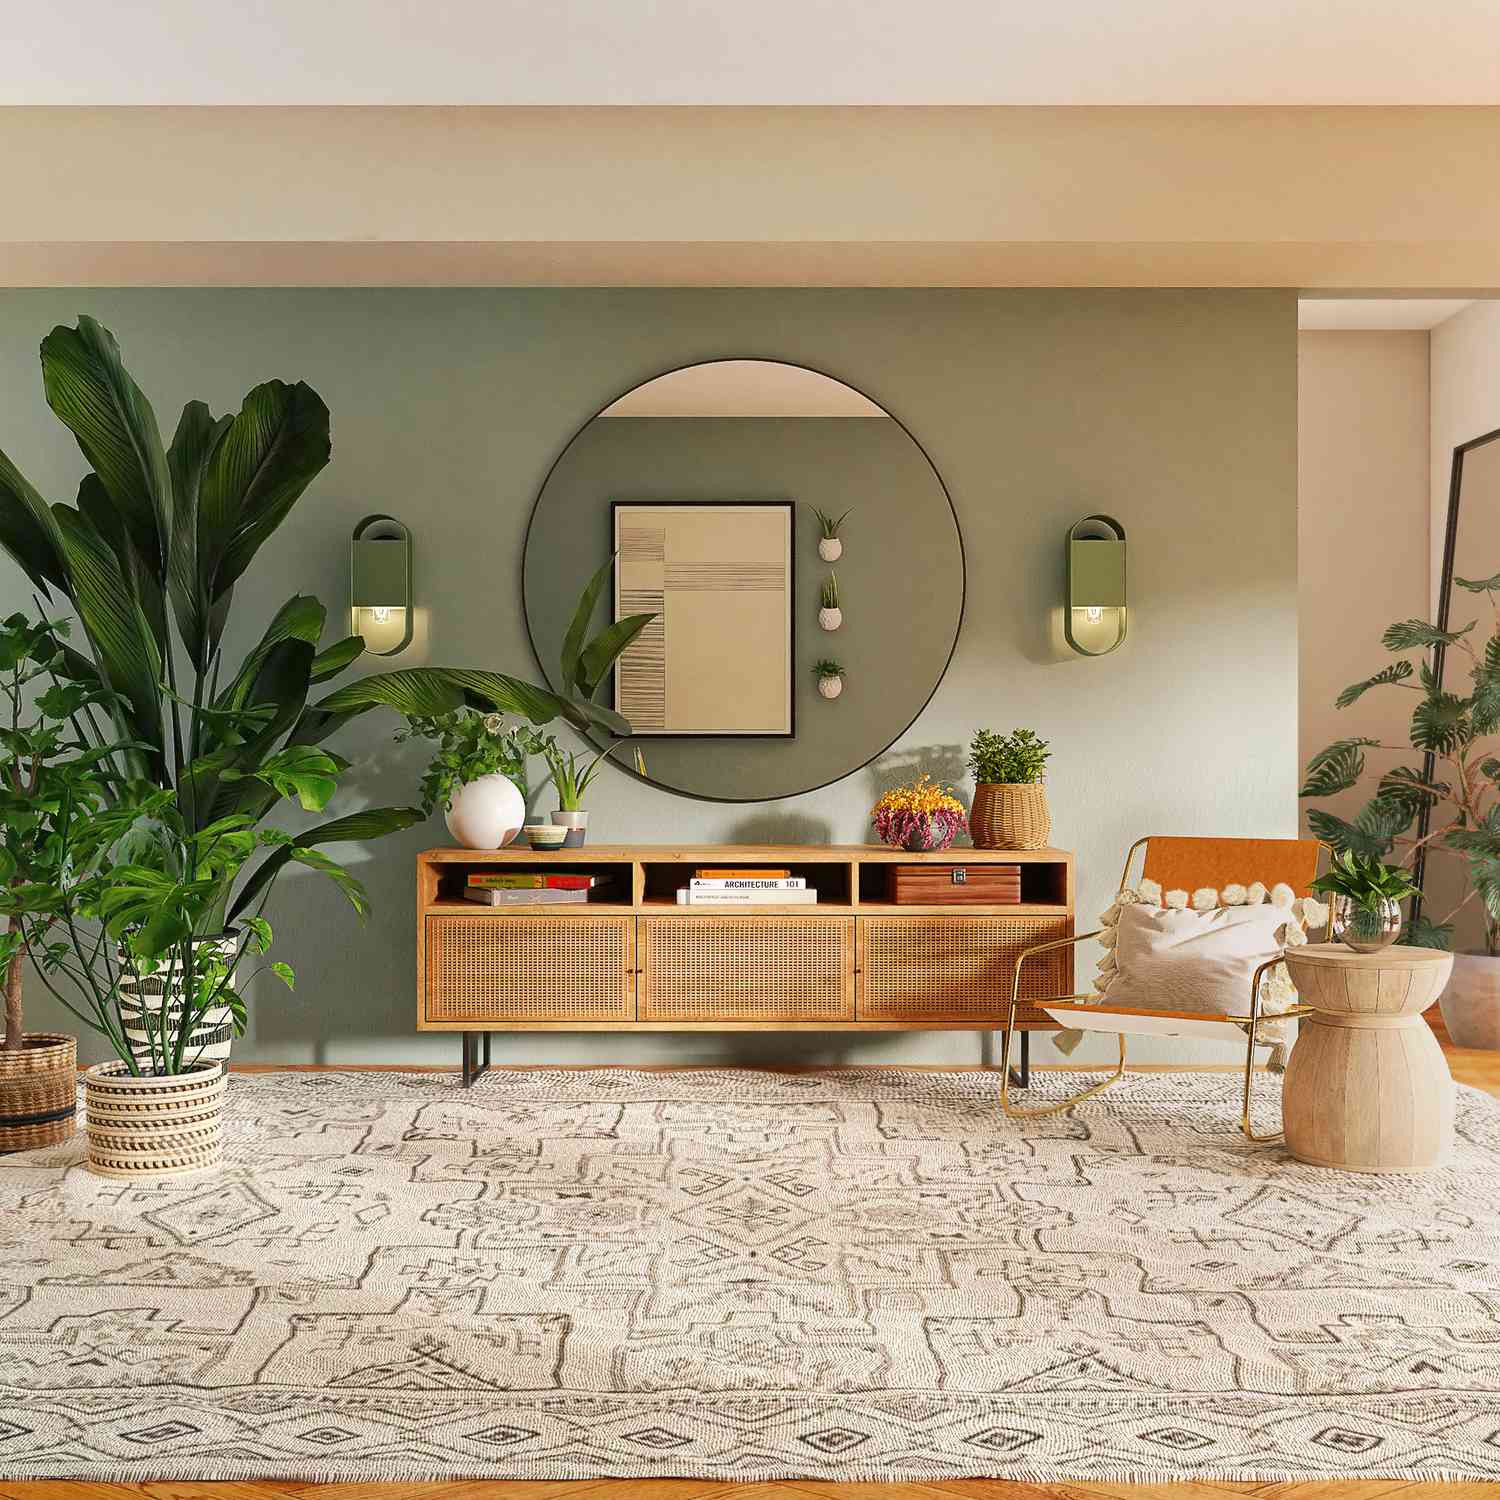 Interior de casa con pintura verde menta en la pared, espejo redondo y plantas